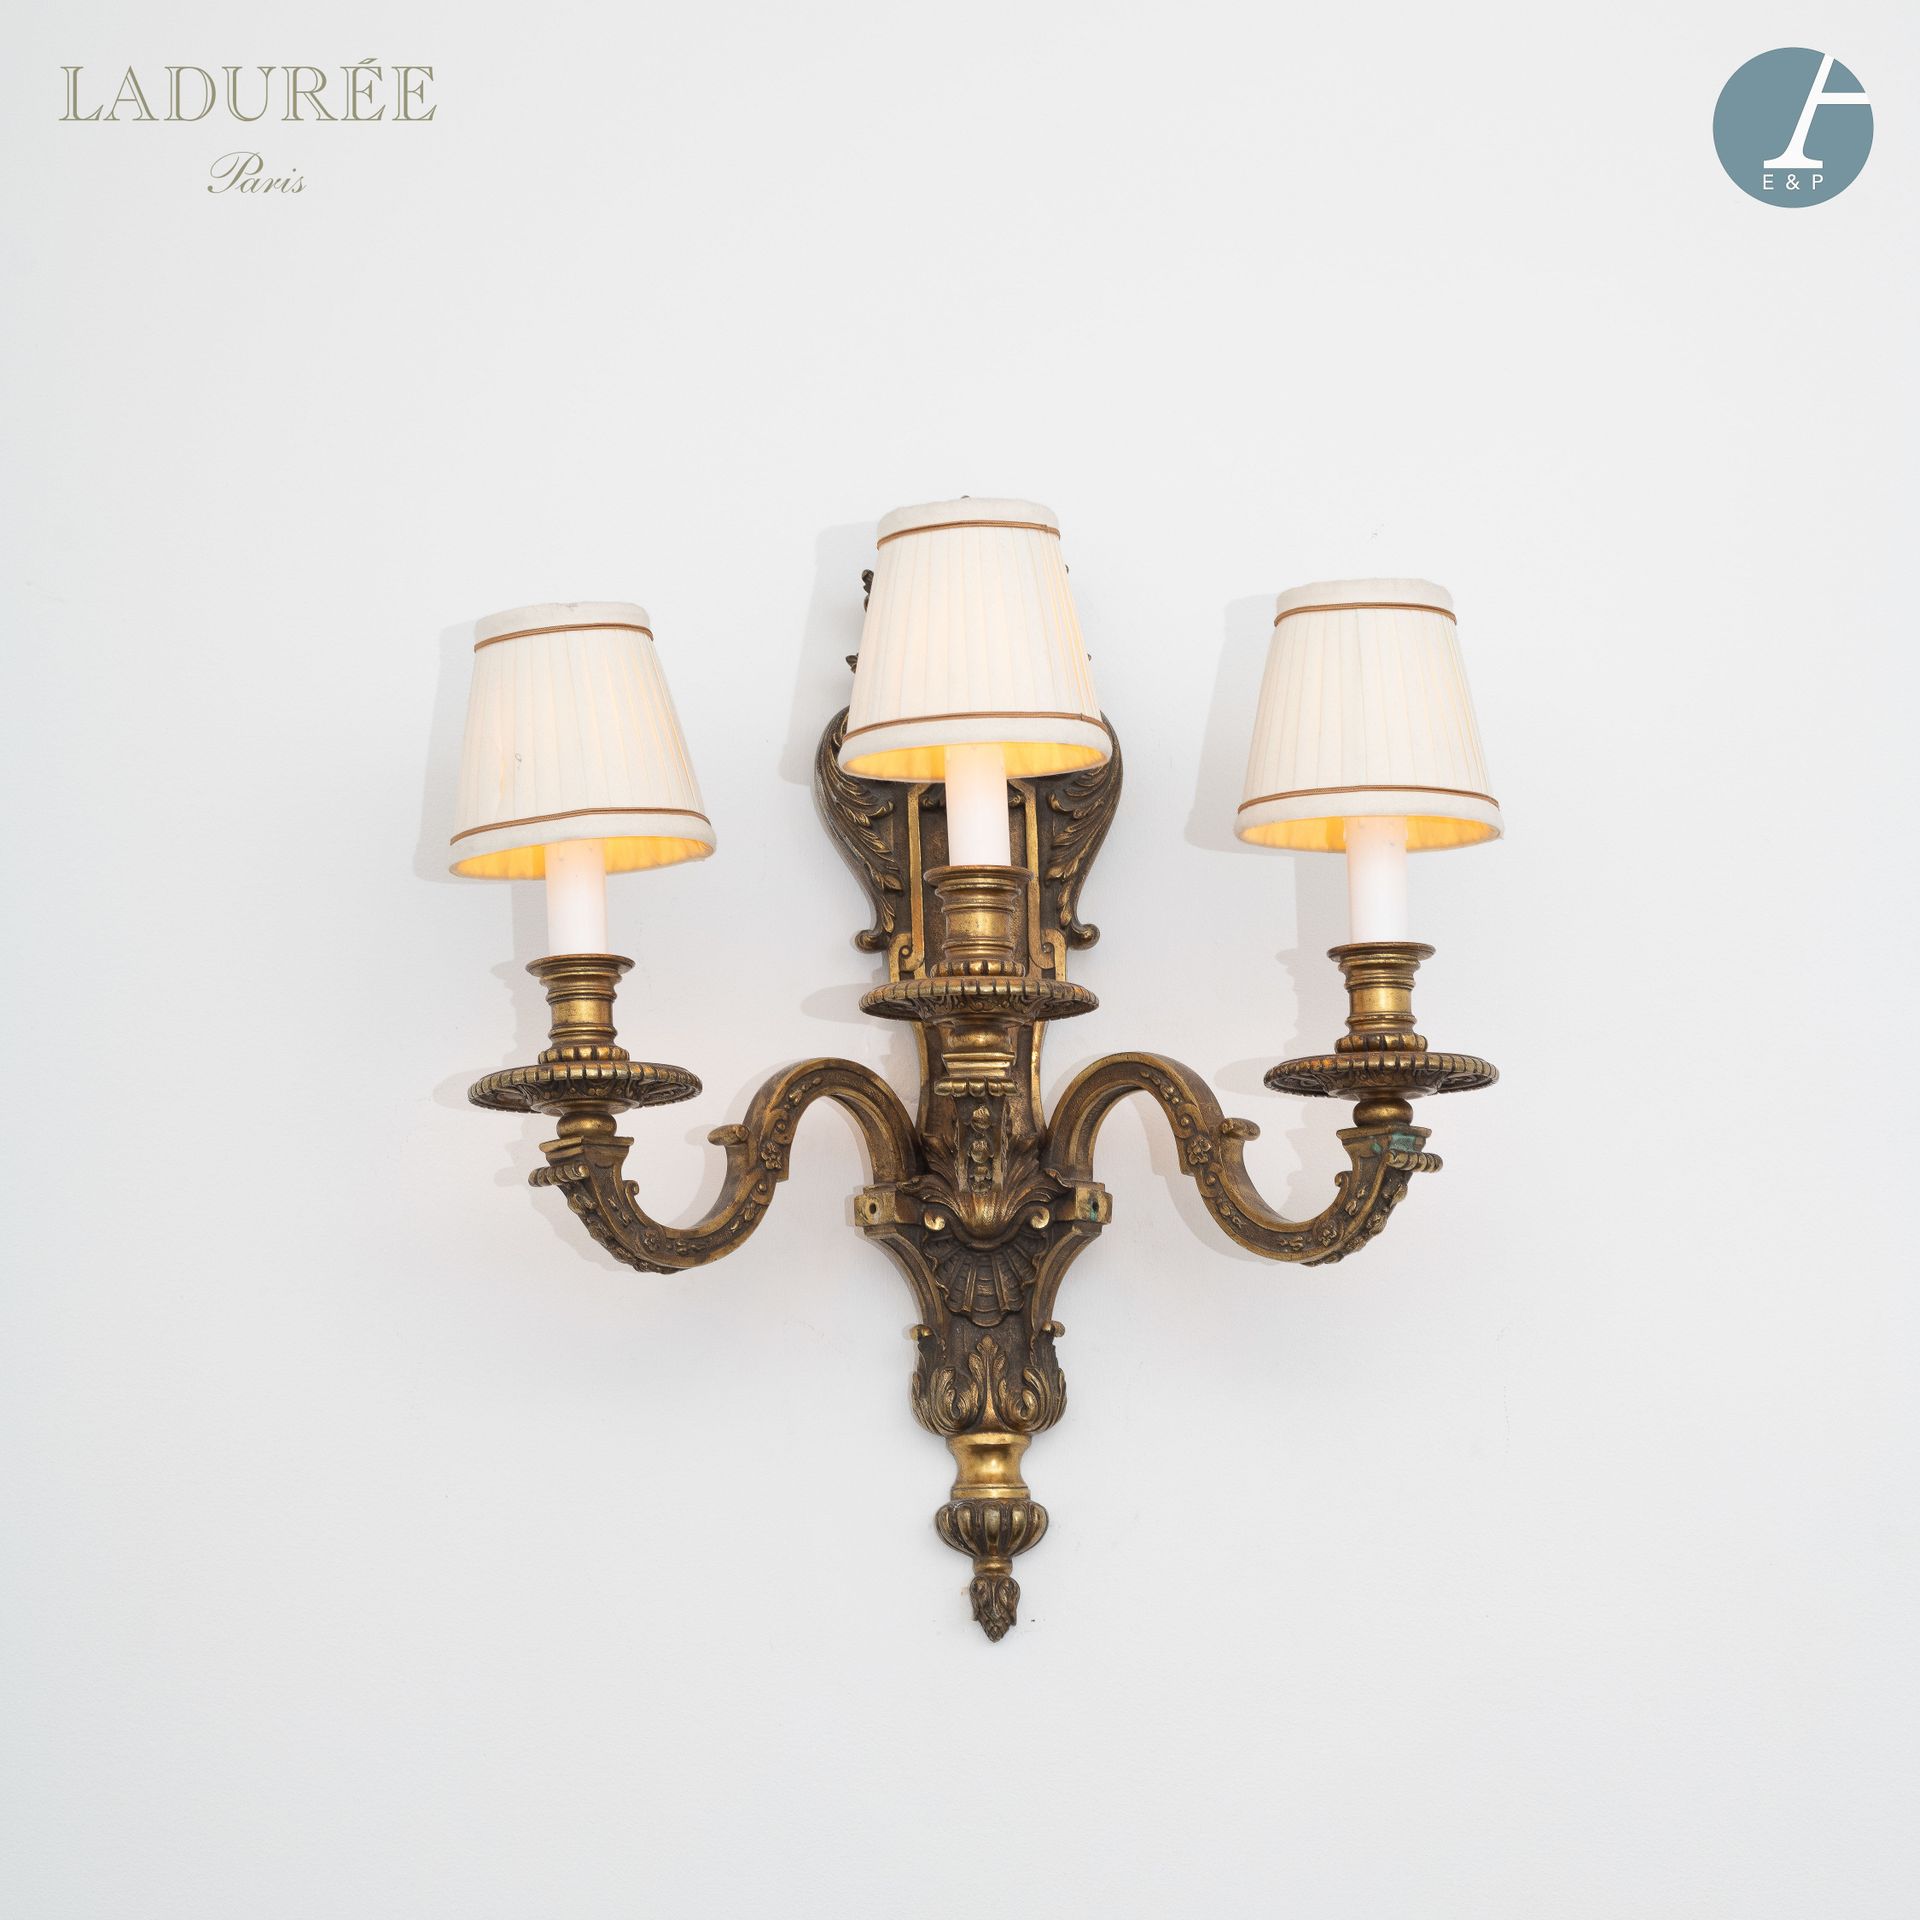 Null De la Maison Ladurée - Oficinas.

Aplique de bronce con tres brazos de luz &hellip;